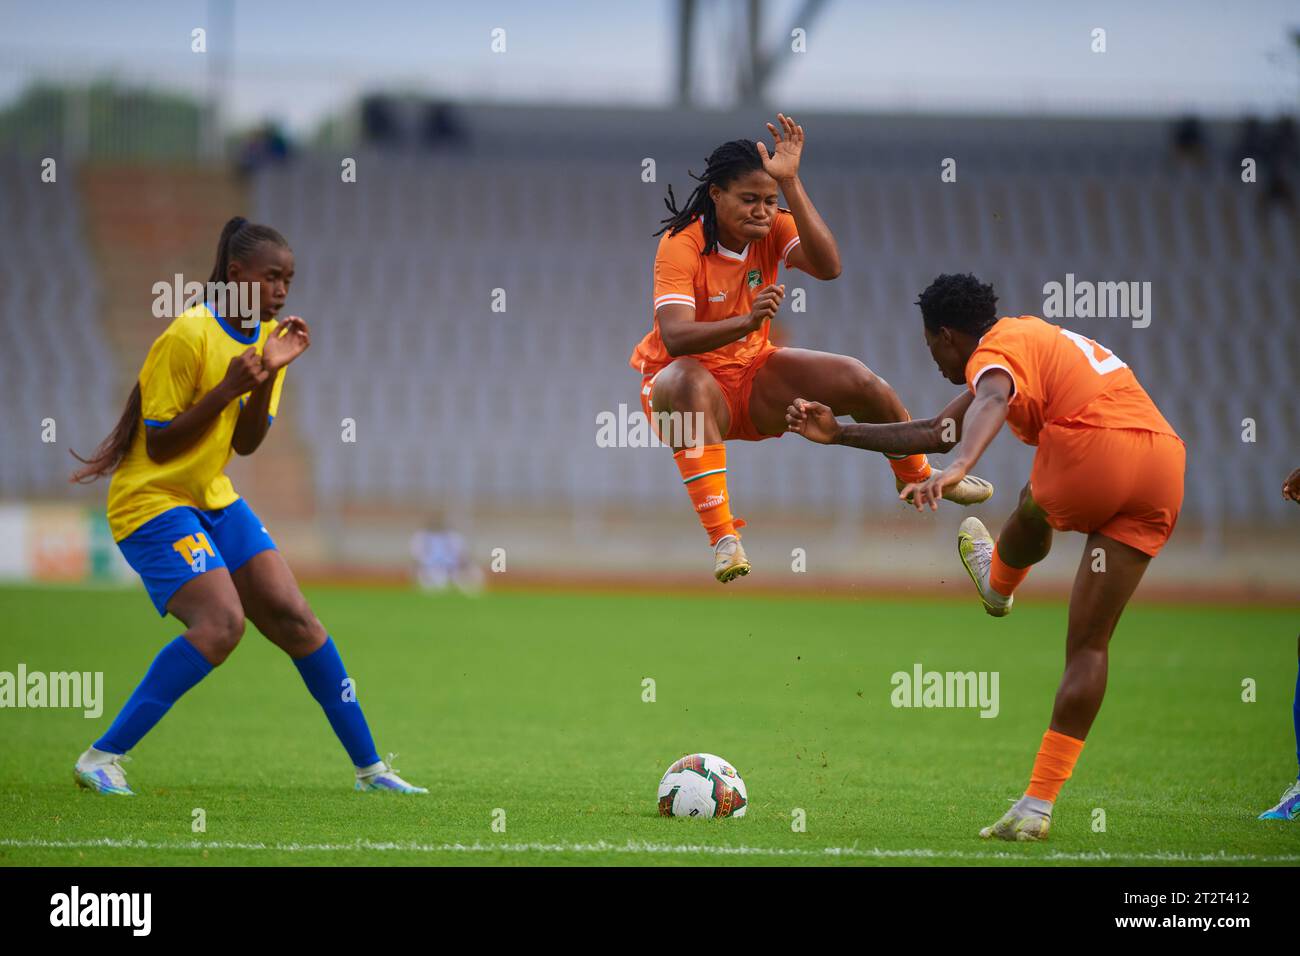 La ivoriana Kphao Zote Nina che schiera la palla dal suo compatriota e la tanzaniana Joyce Lema si proteggono a vicenda Foto Stock